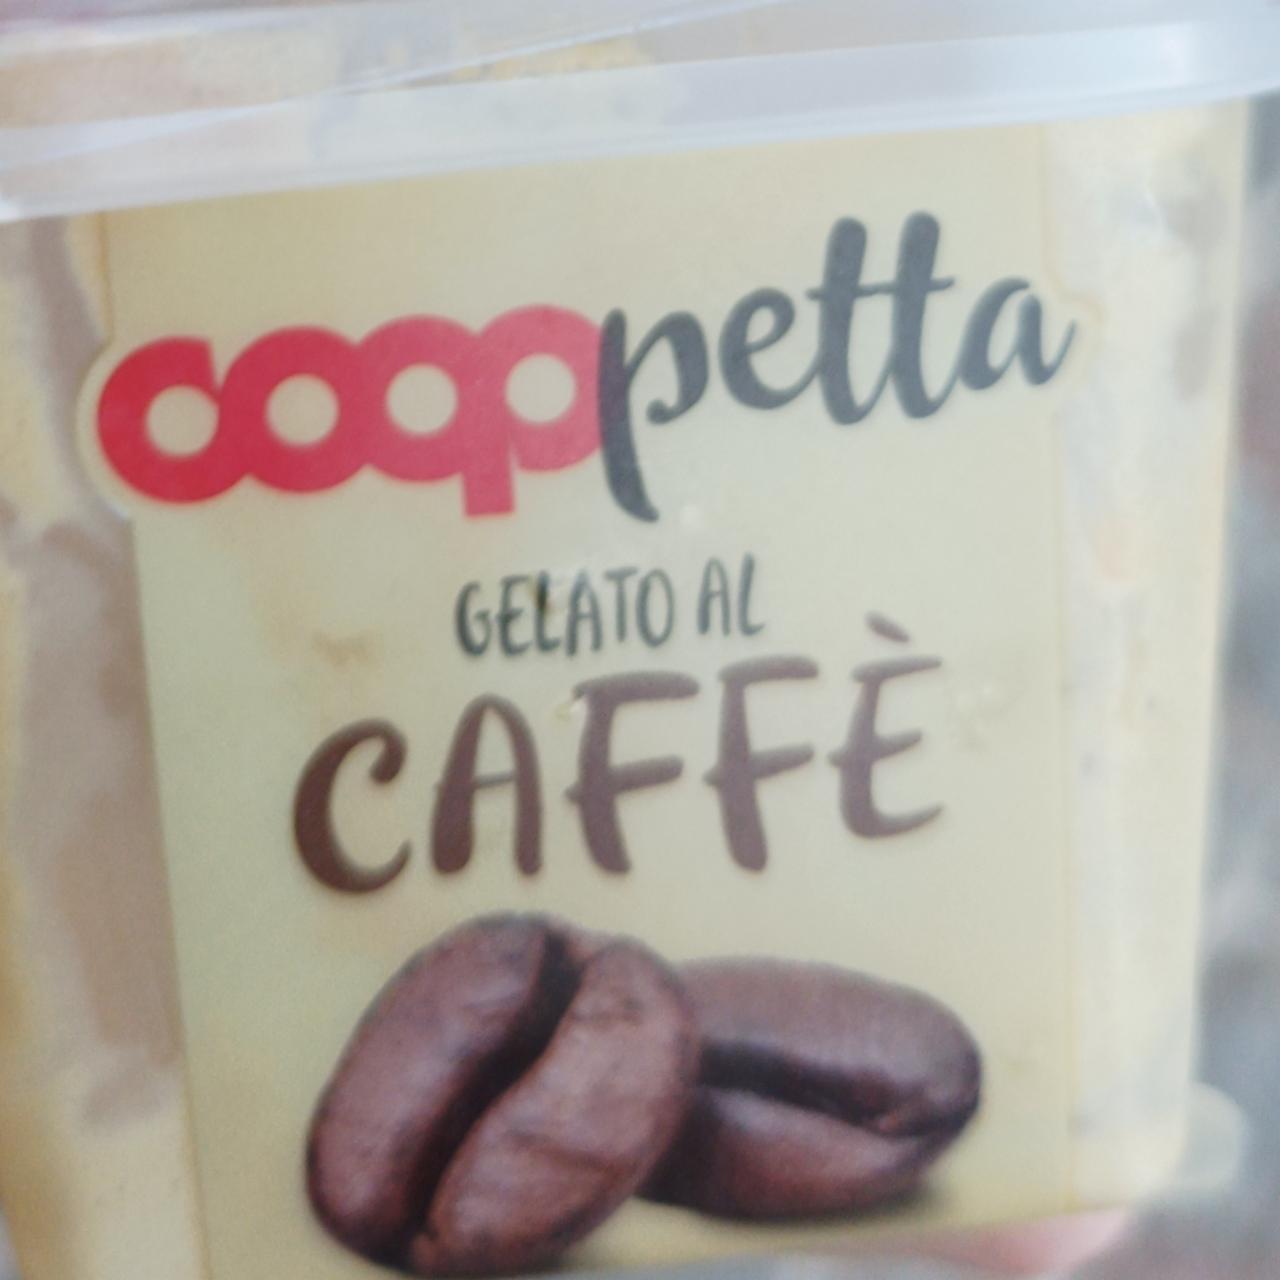 Fotografie - Gelato al caffé Cooppetta